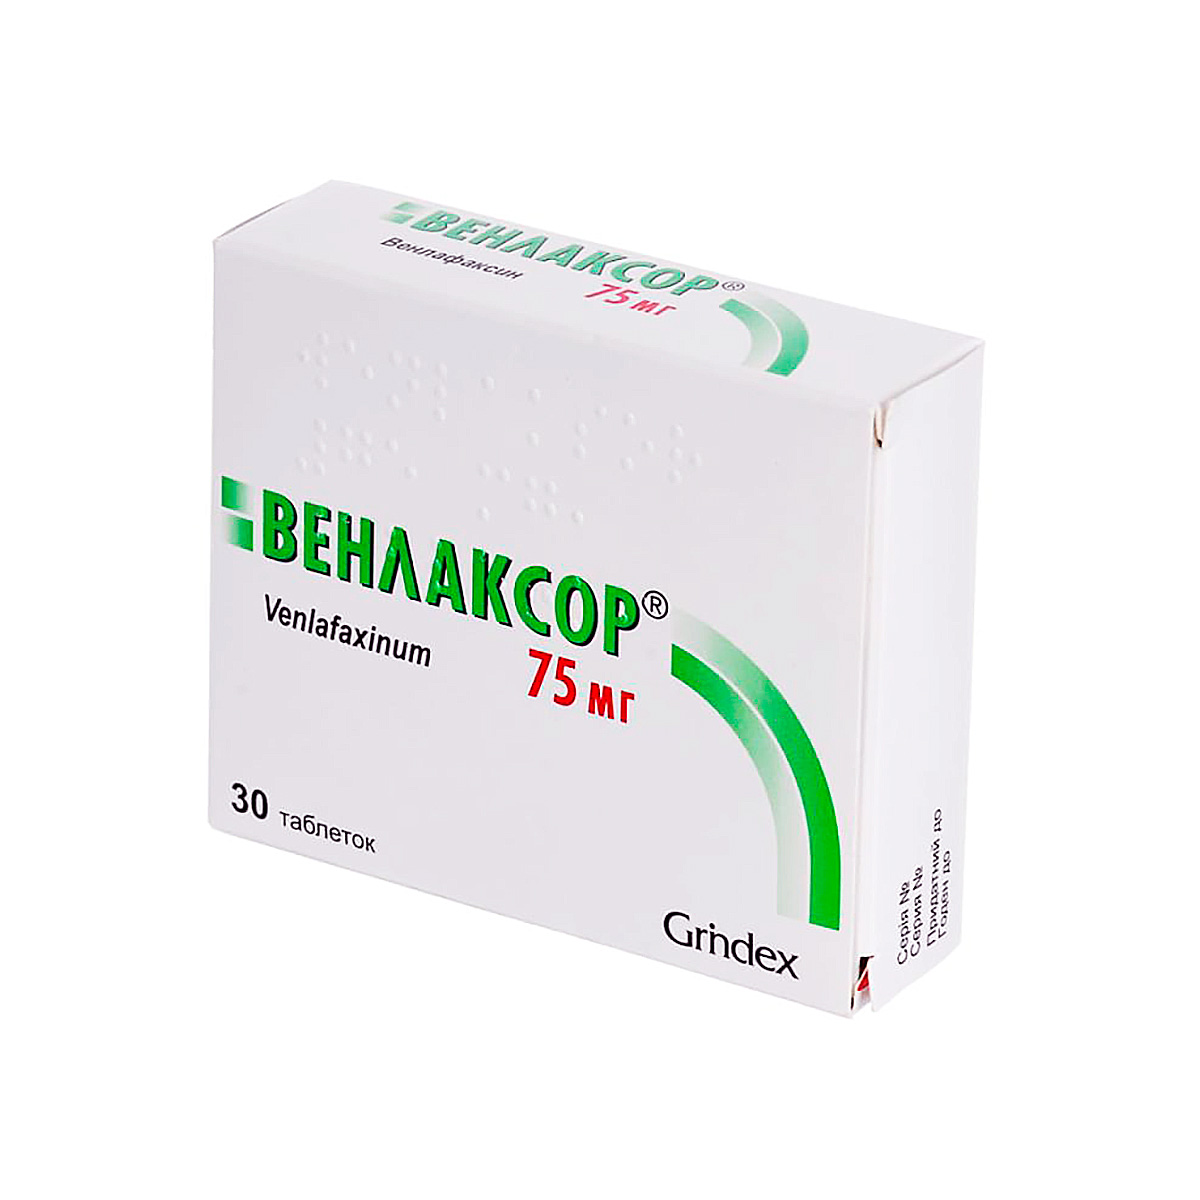 Венлаксор 75 мг таблетки 30 шт